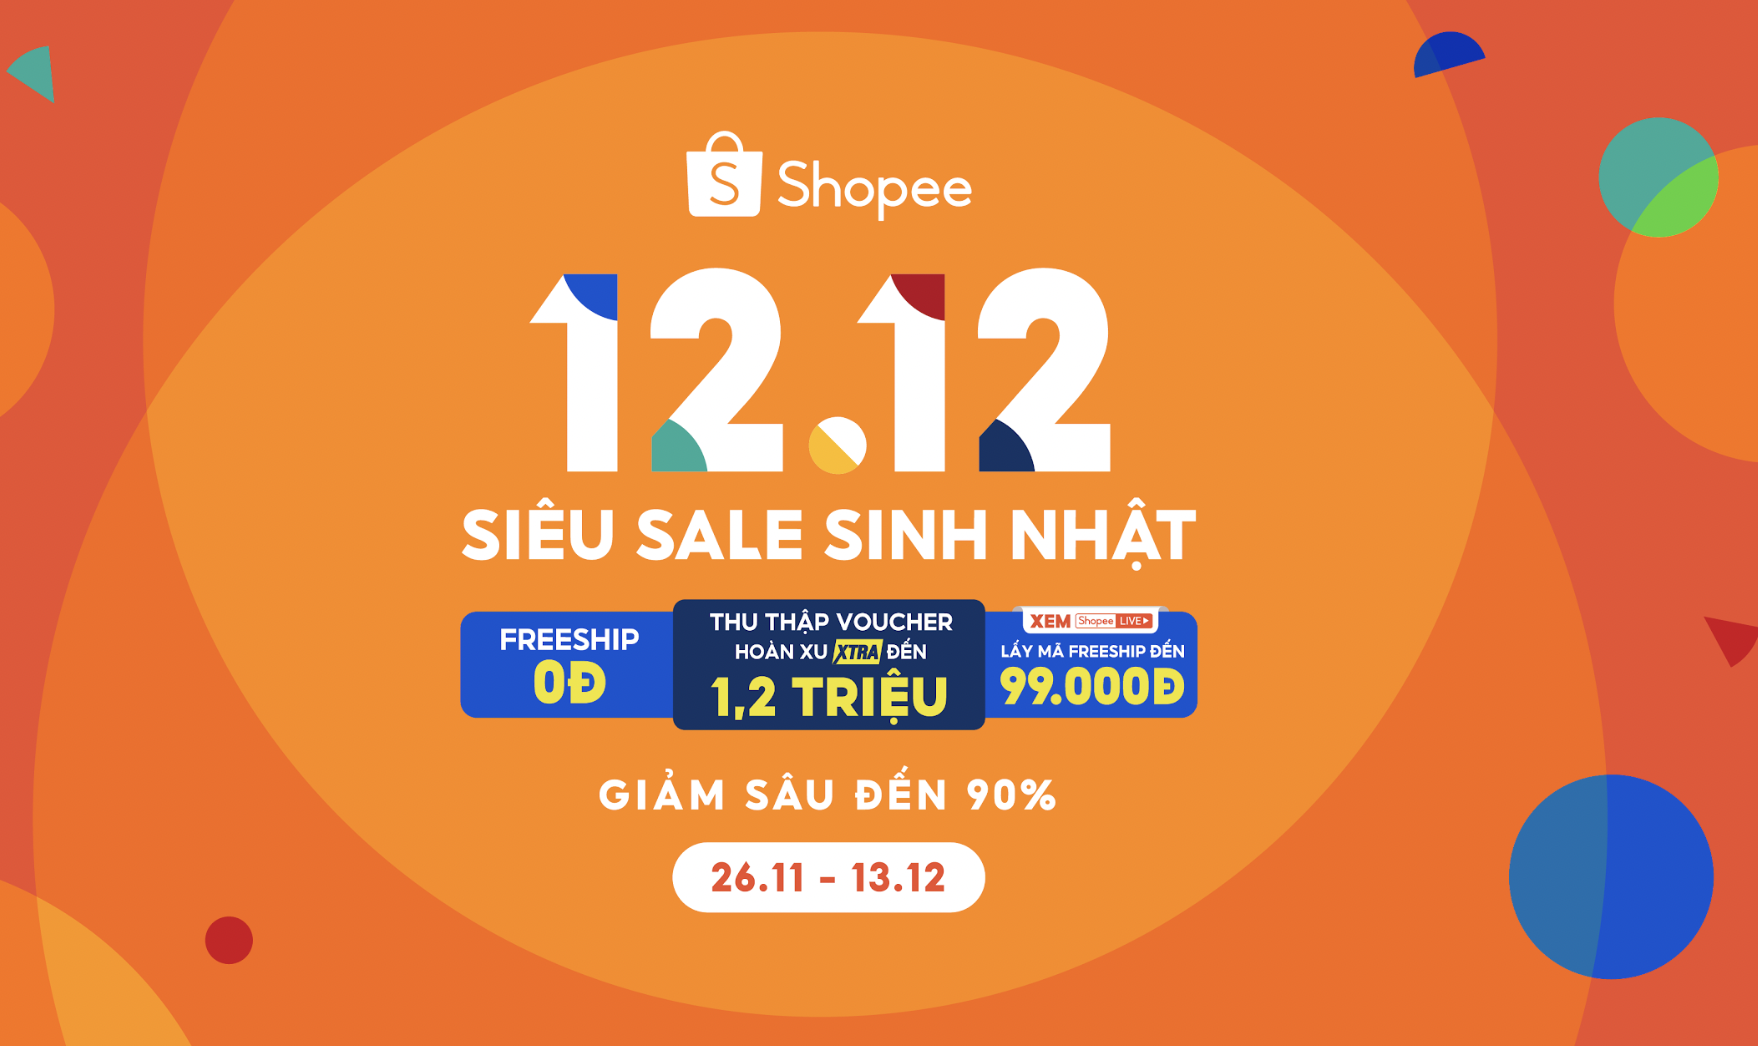 Chia sẻ hơn 82 về shopee 12.12 sale sinh nhật mới nhất